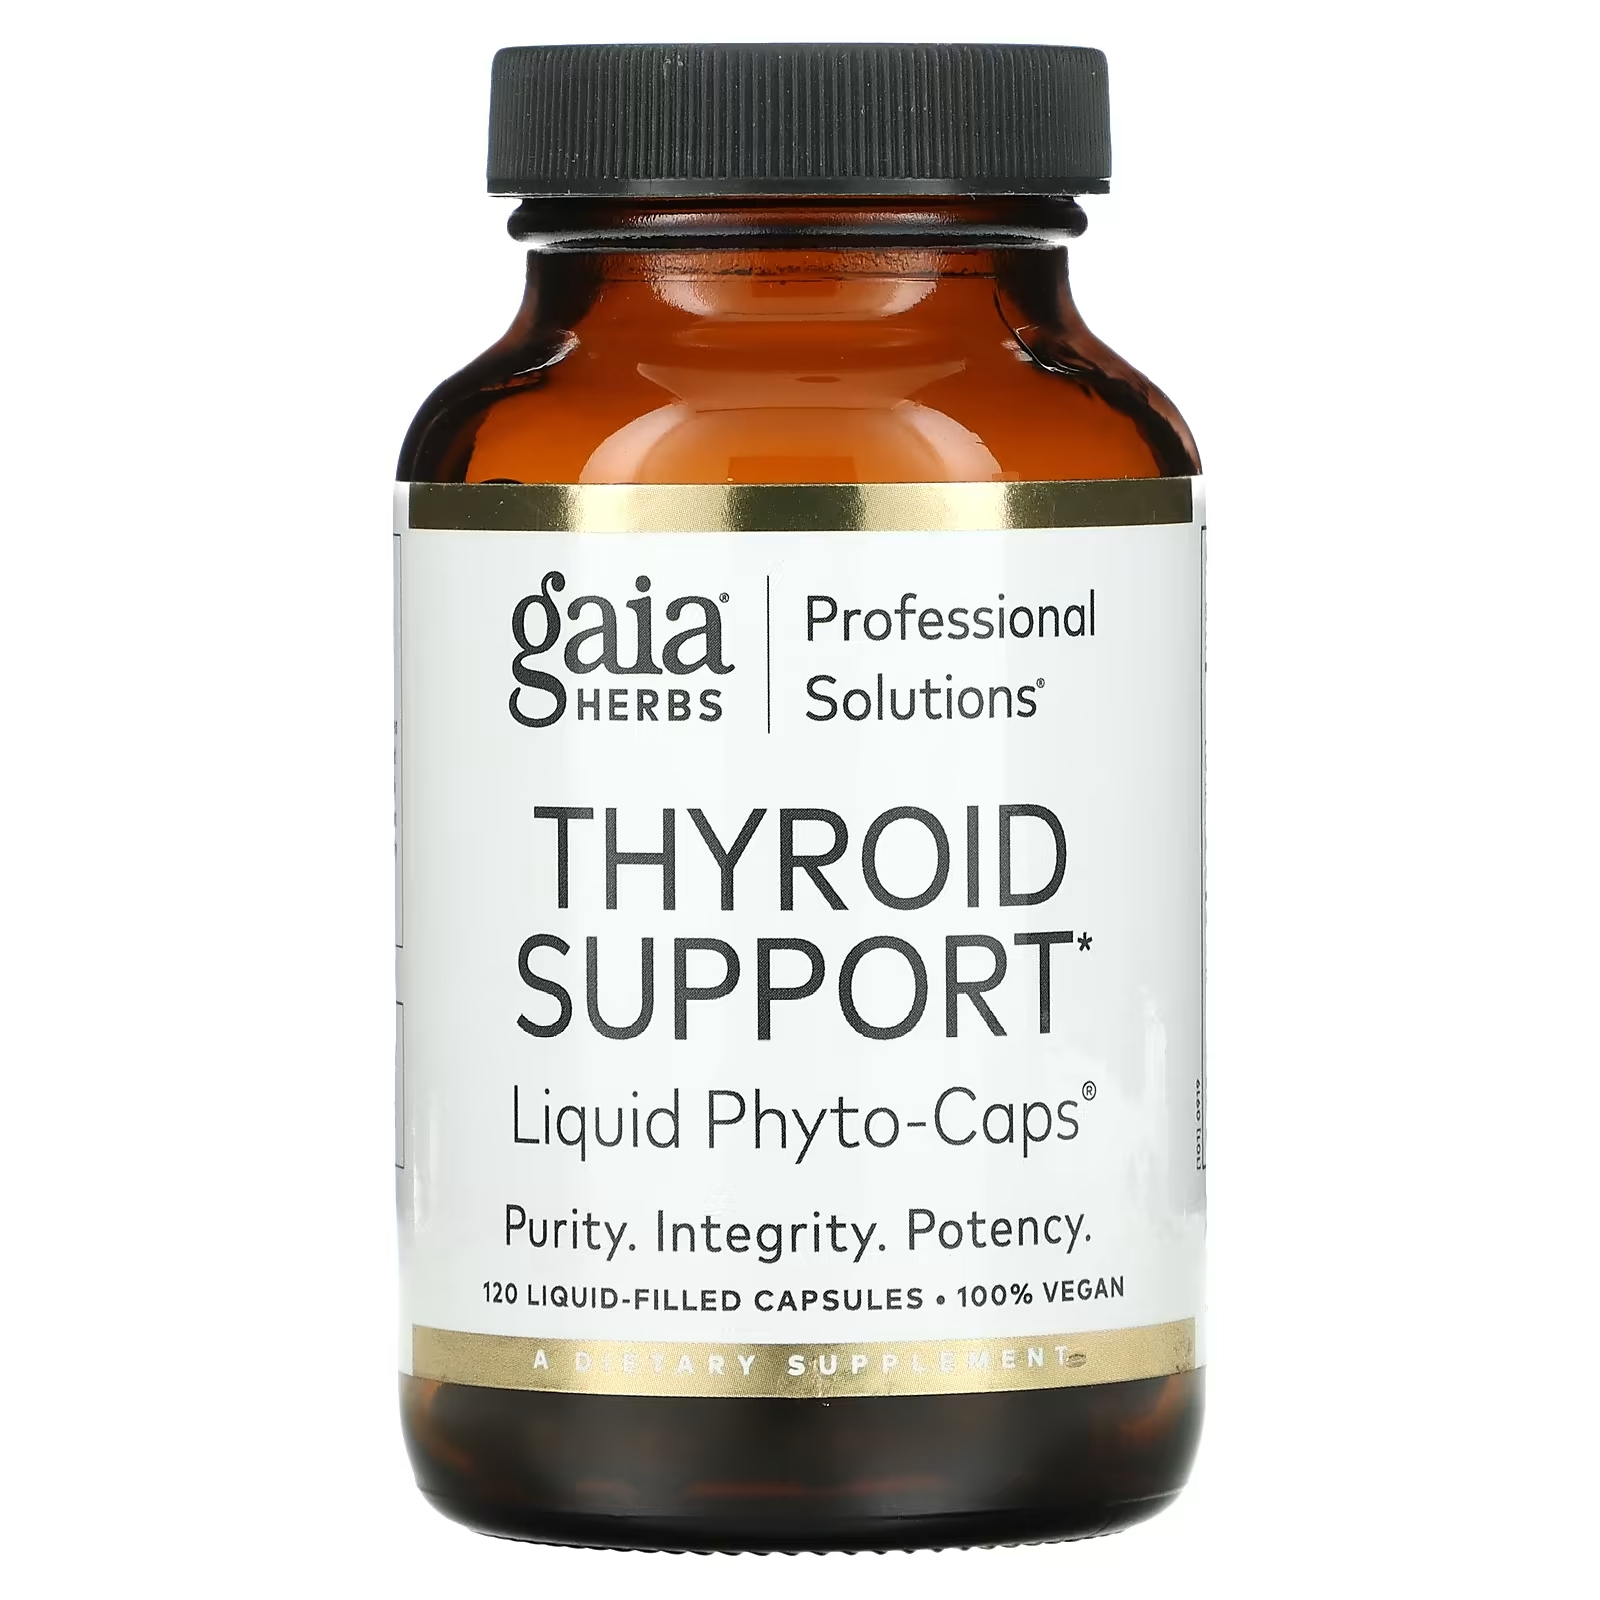 Gaia Herbs Professional Solutions Средство для поддержки щитовидной железы, 120 капсул